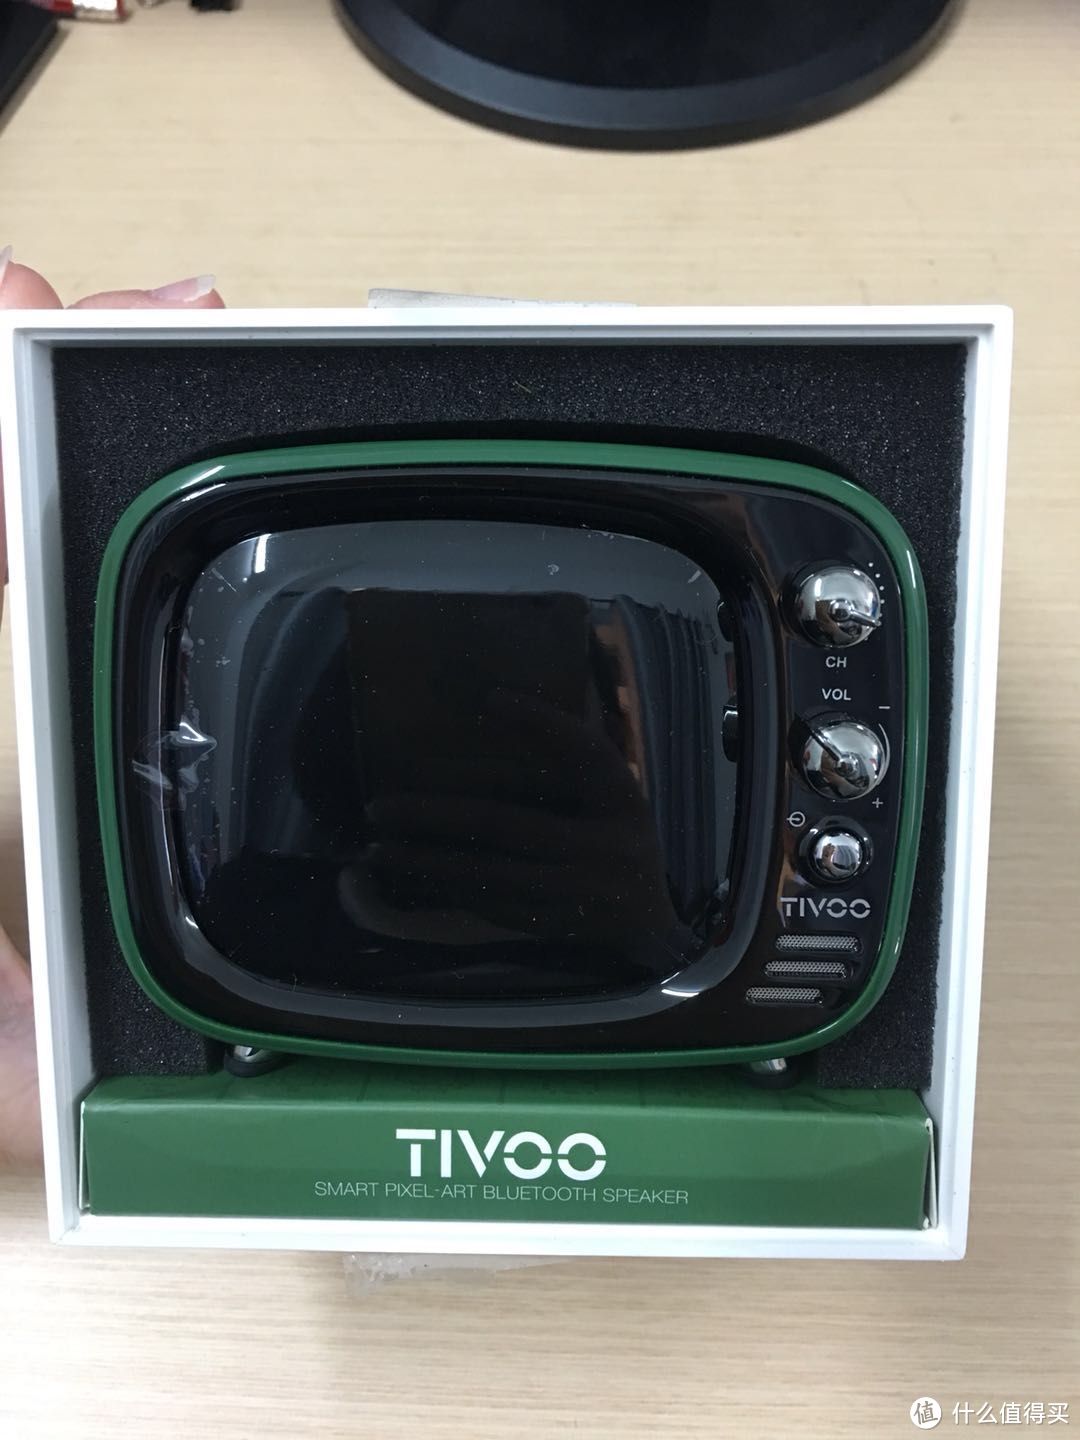 临急抱佛脚之二次测评Divoom Tivoo像素蓝牙音箱，附西班牙旅游照！